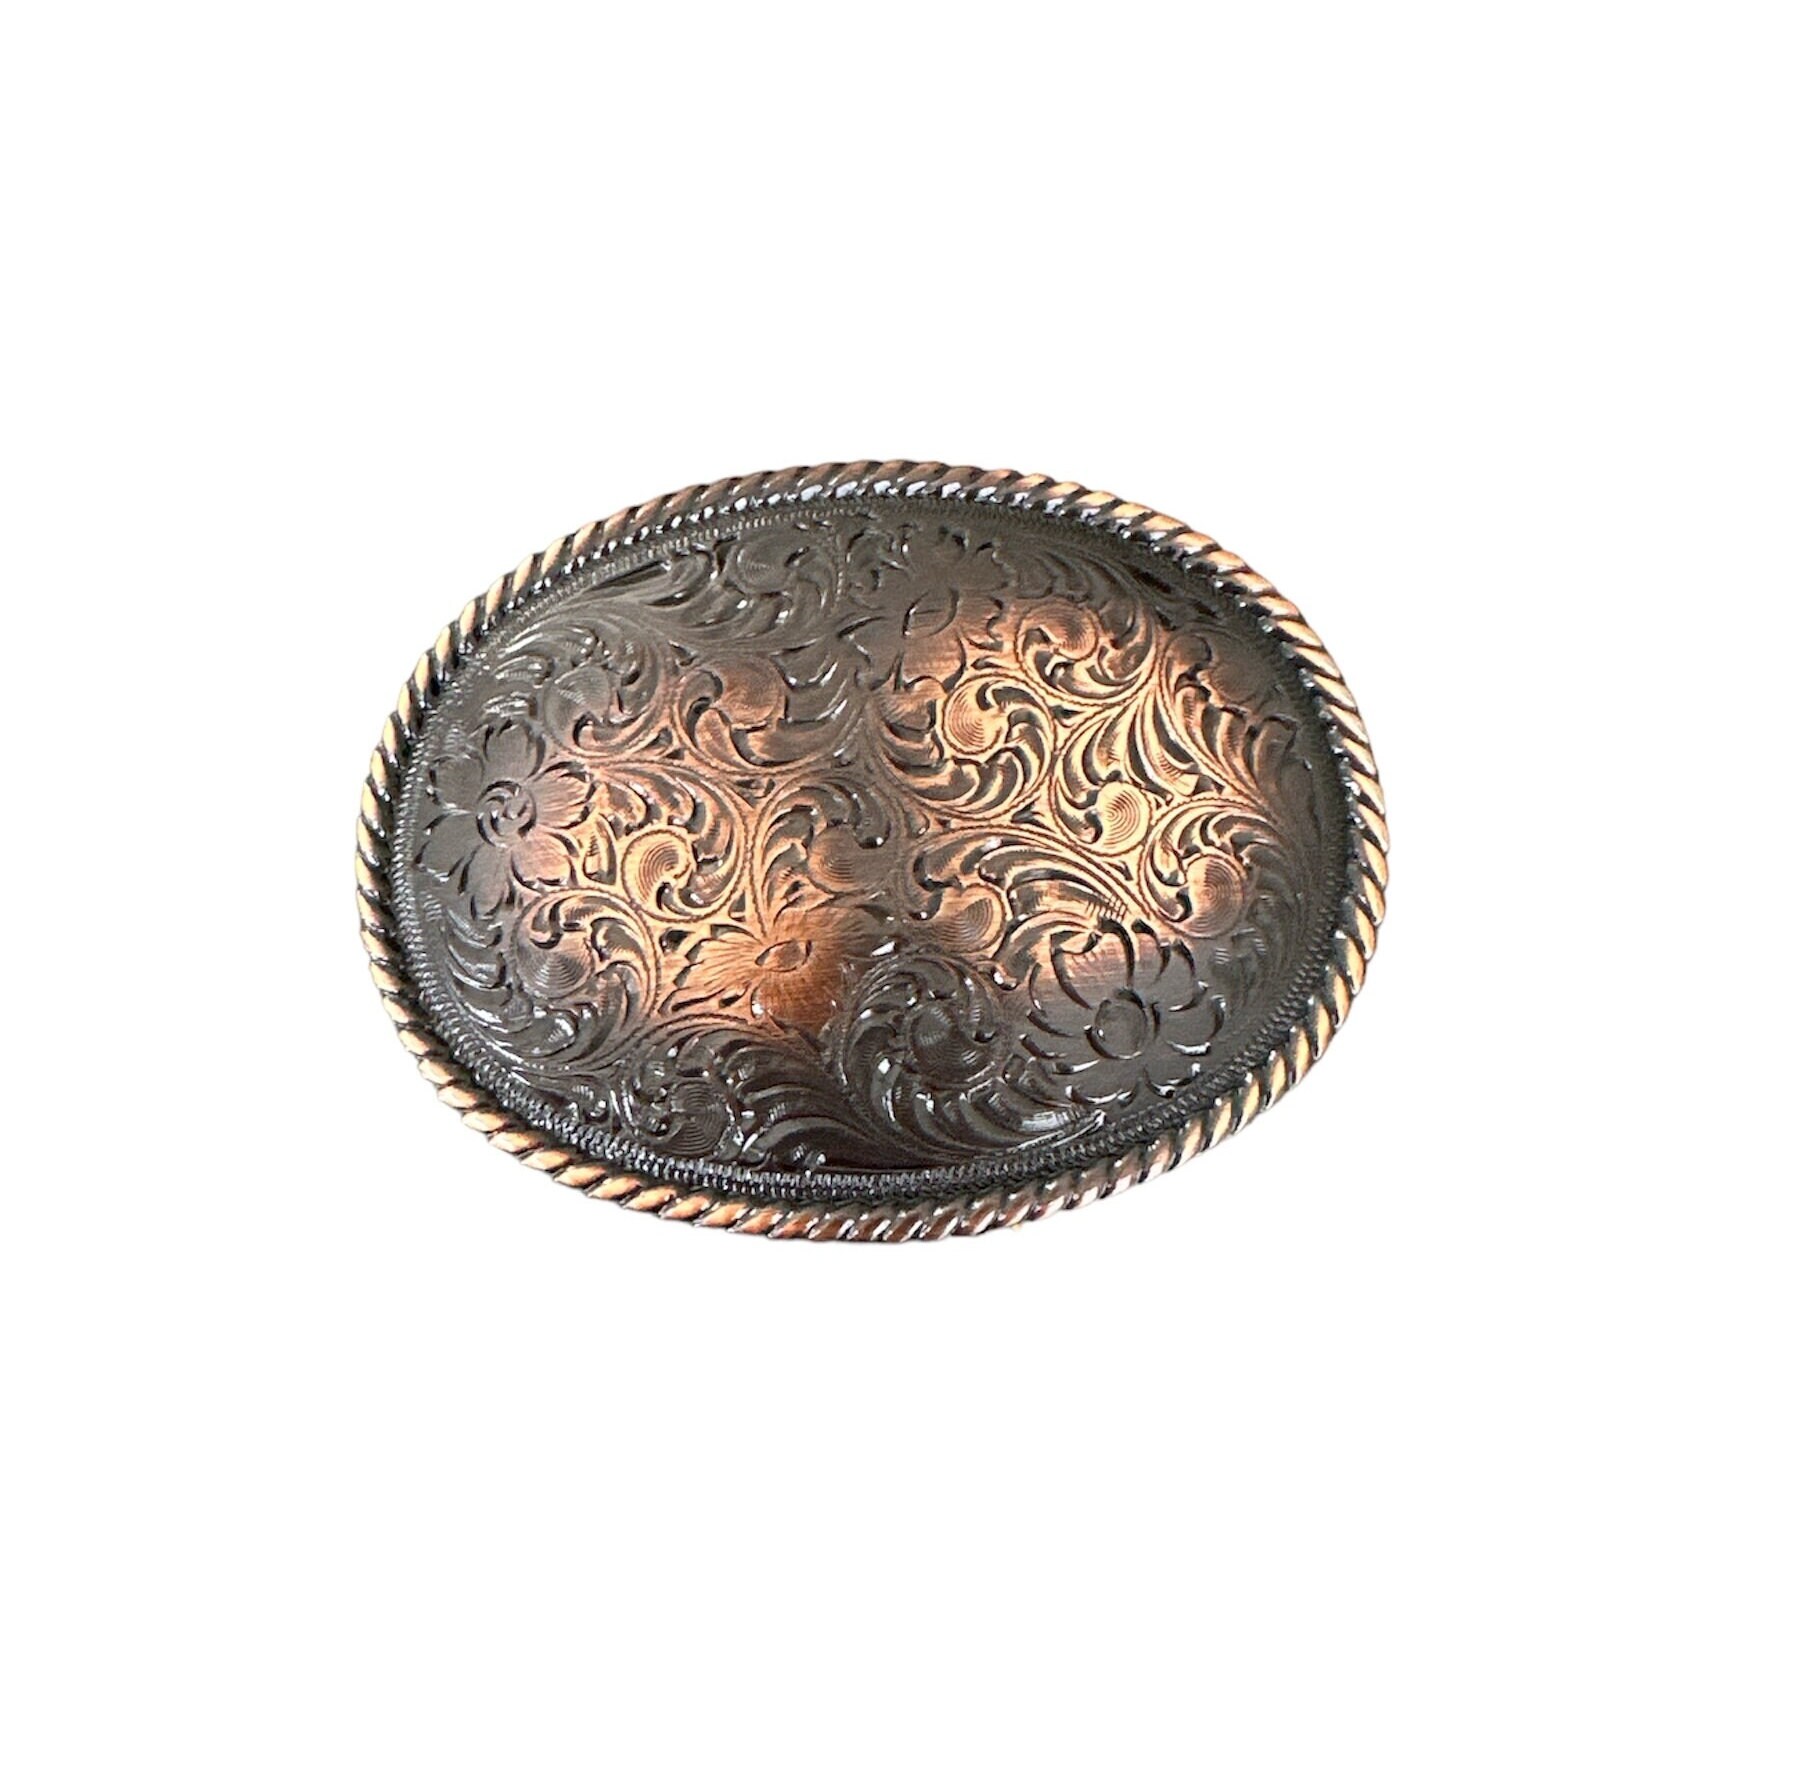 Western Floral Scroll Engraved Belt Buckle Fits 1-1/2(38mm) Belt Strap  (Copper)